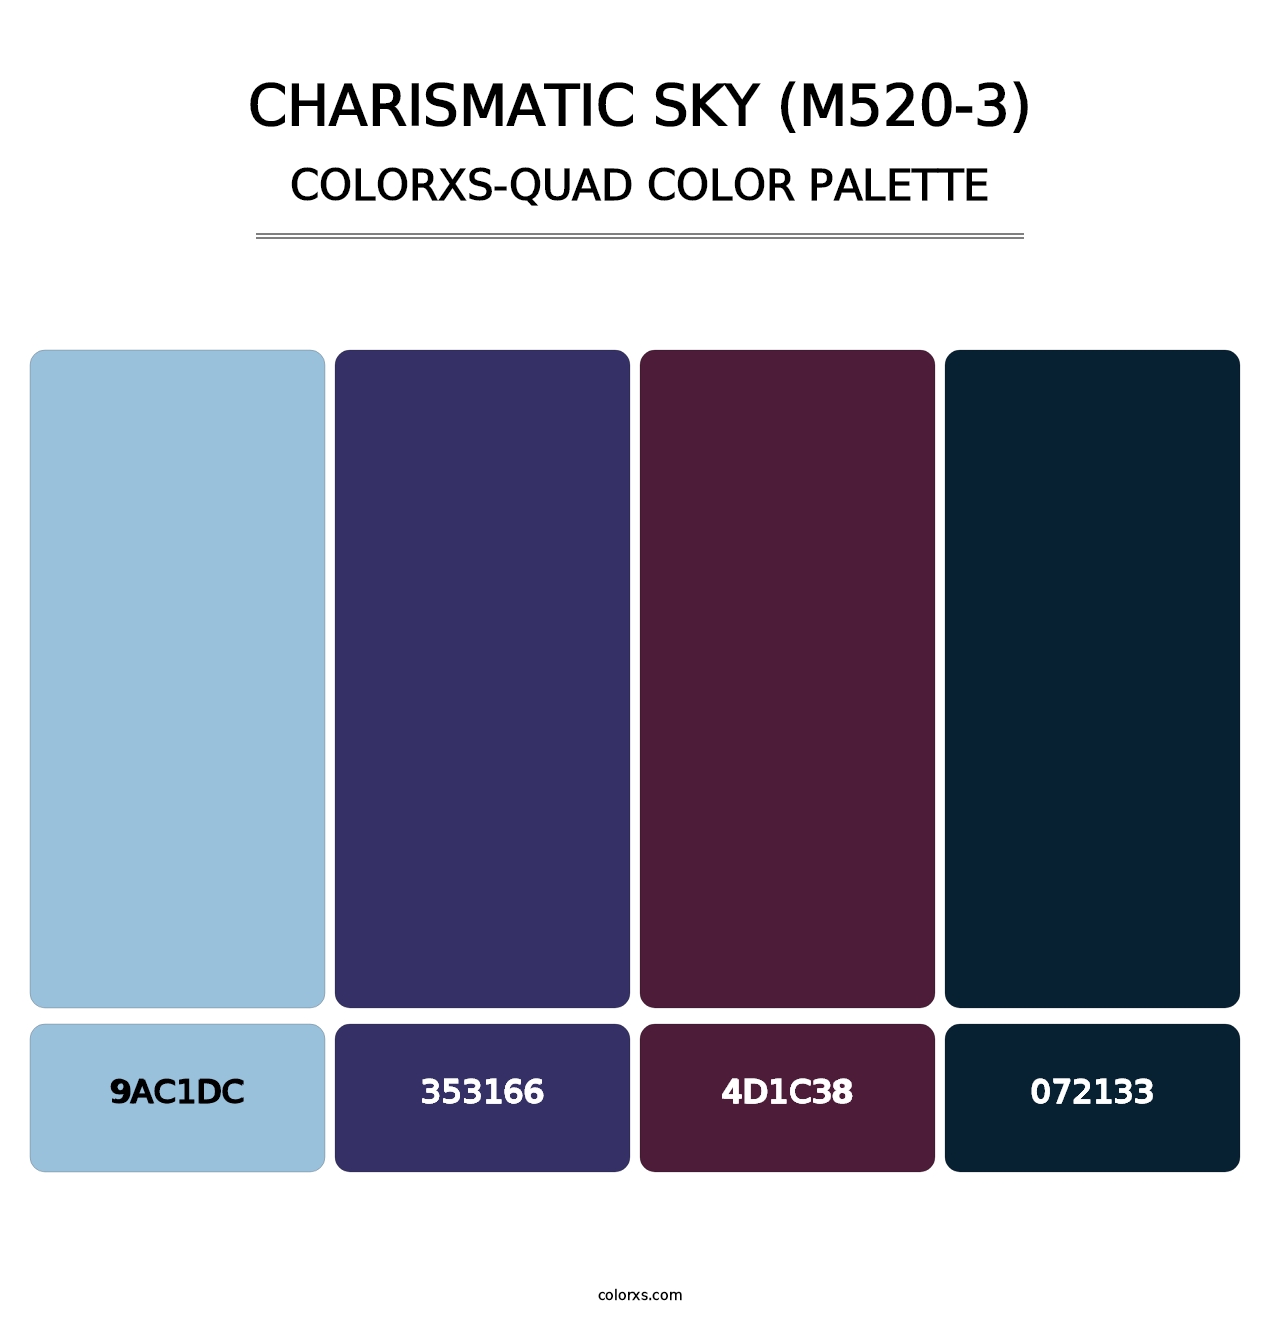 Charismatic Sky (M520-3) - Colorxs Quad Palette